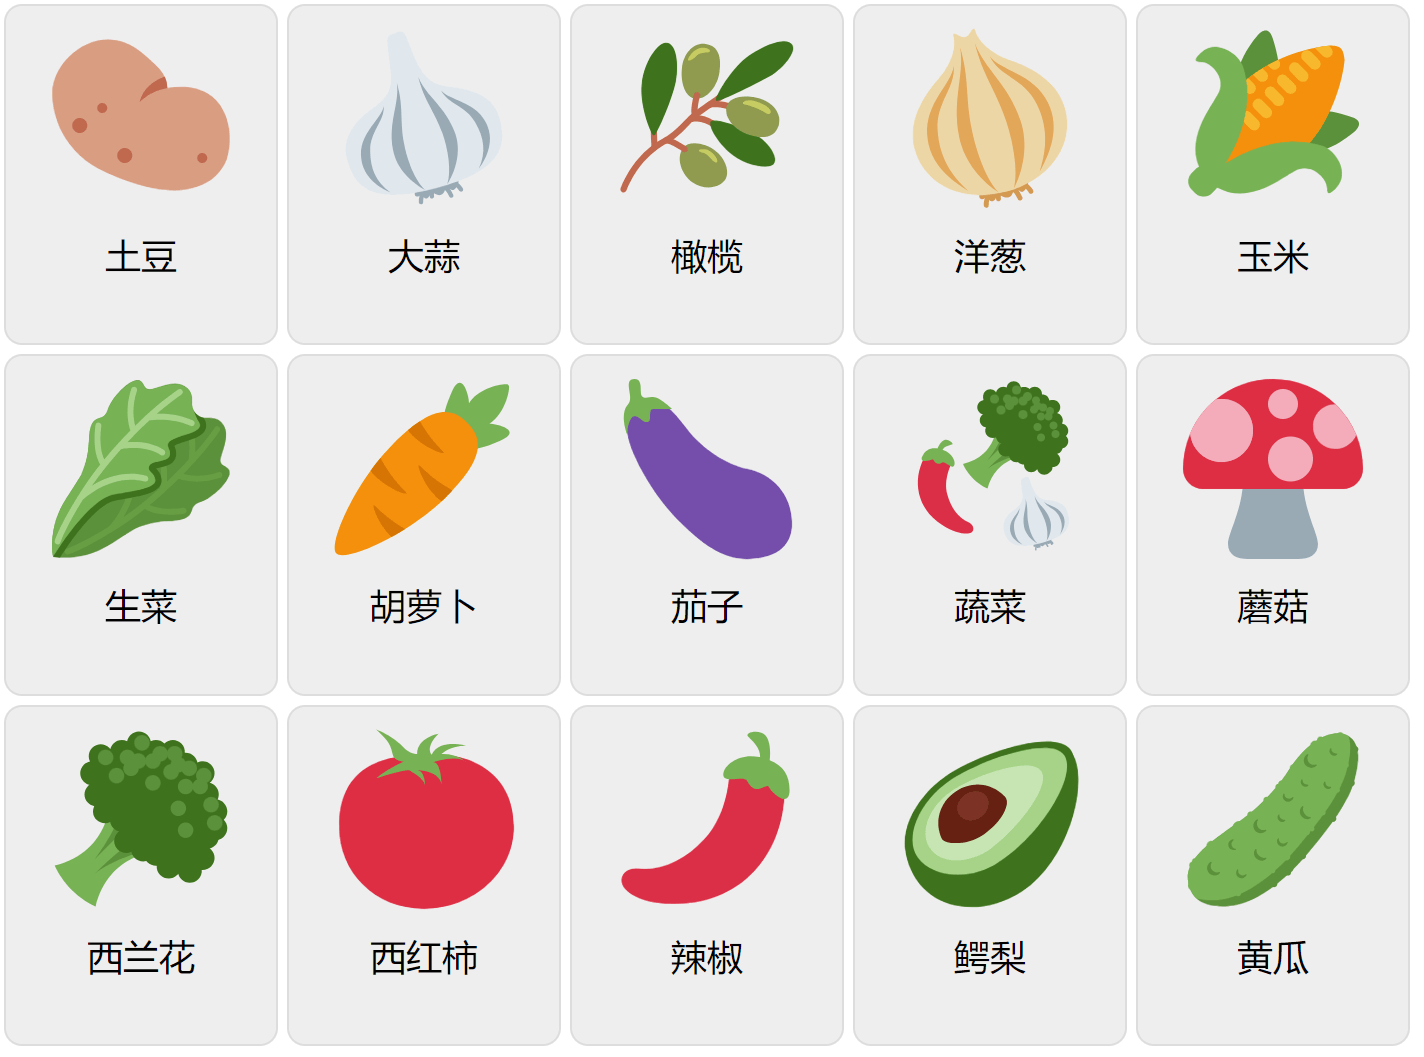 Gemüse auf Mandarin (Chinesisch)